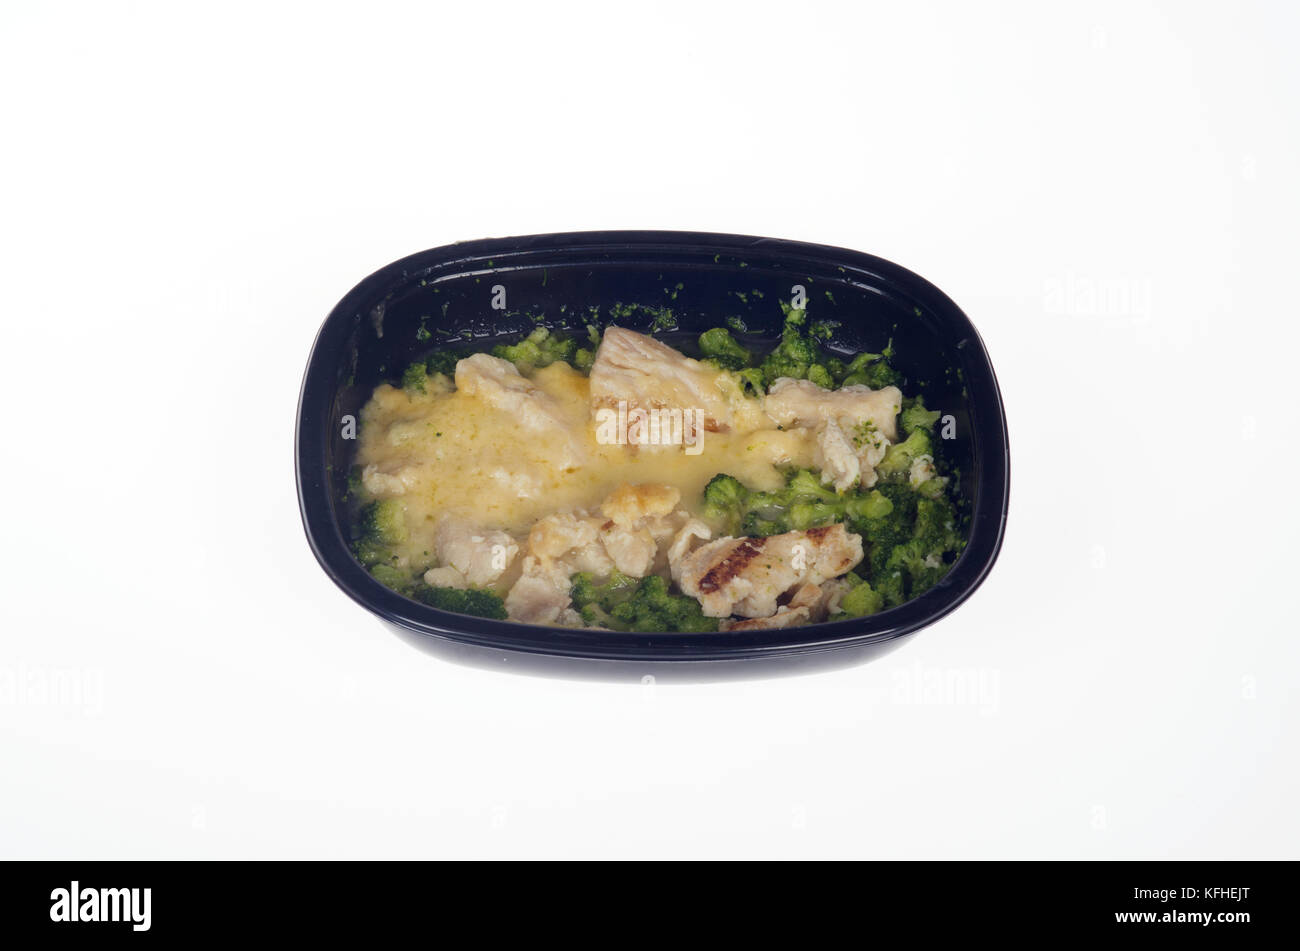 La dieta de Atkins Microwaved tv cena de pollo Foto de stock